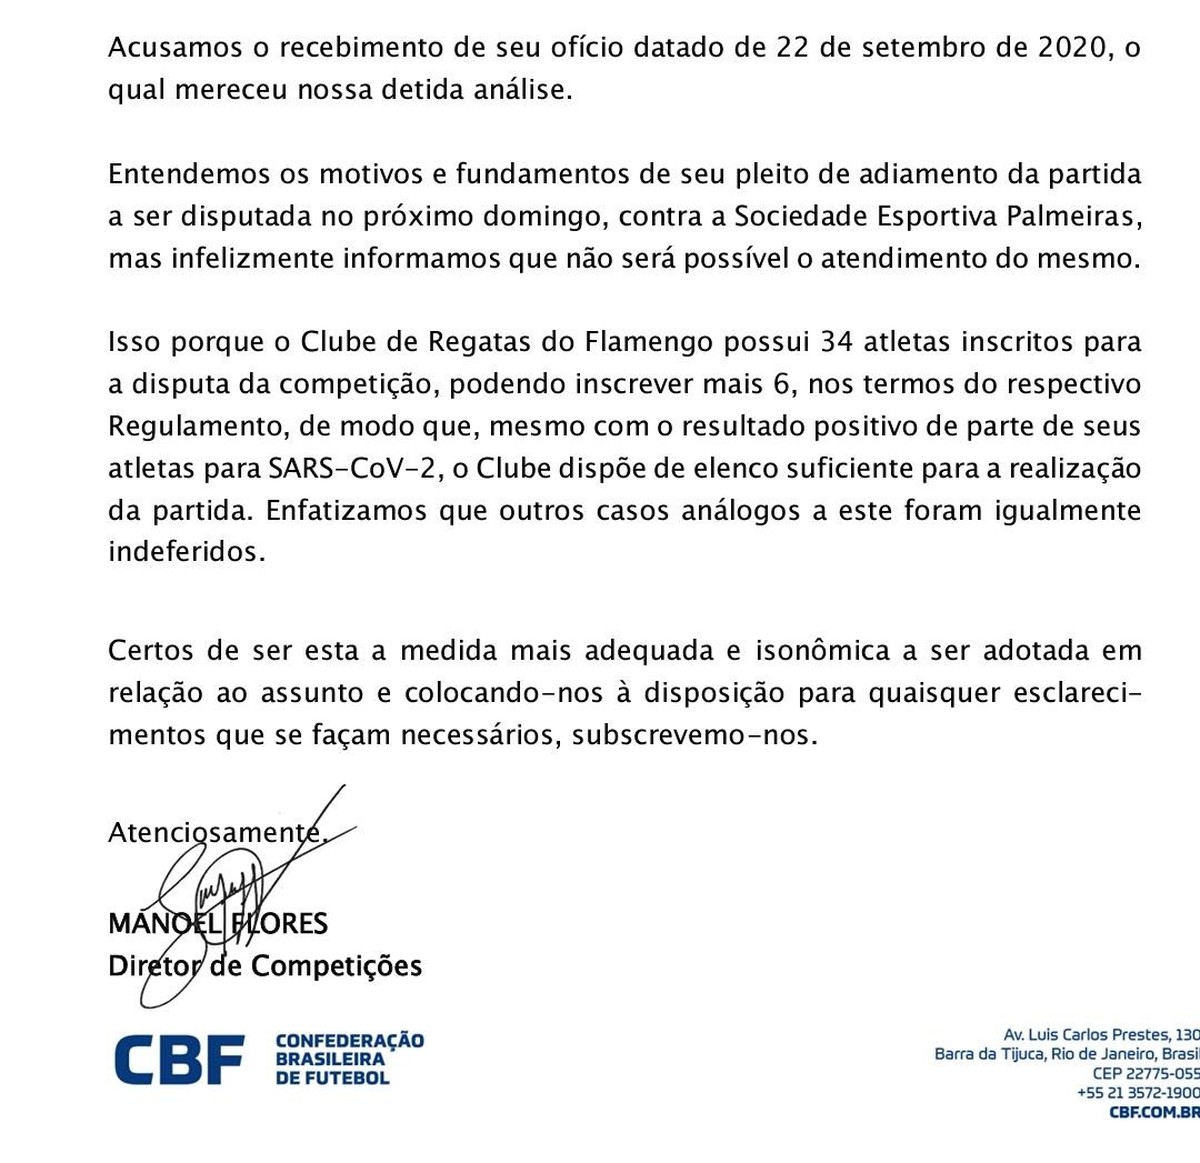 ATENÇÃO: CBF ADIOU 2 JOGOS DO VASCO NO BRASILEIRO, CONFIRA AS NOVAS DATAS